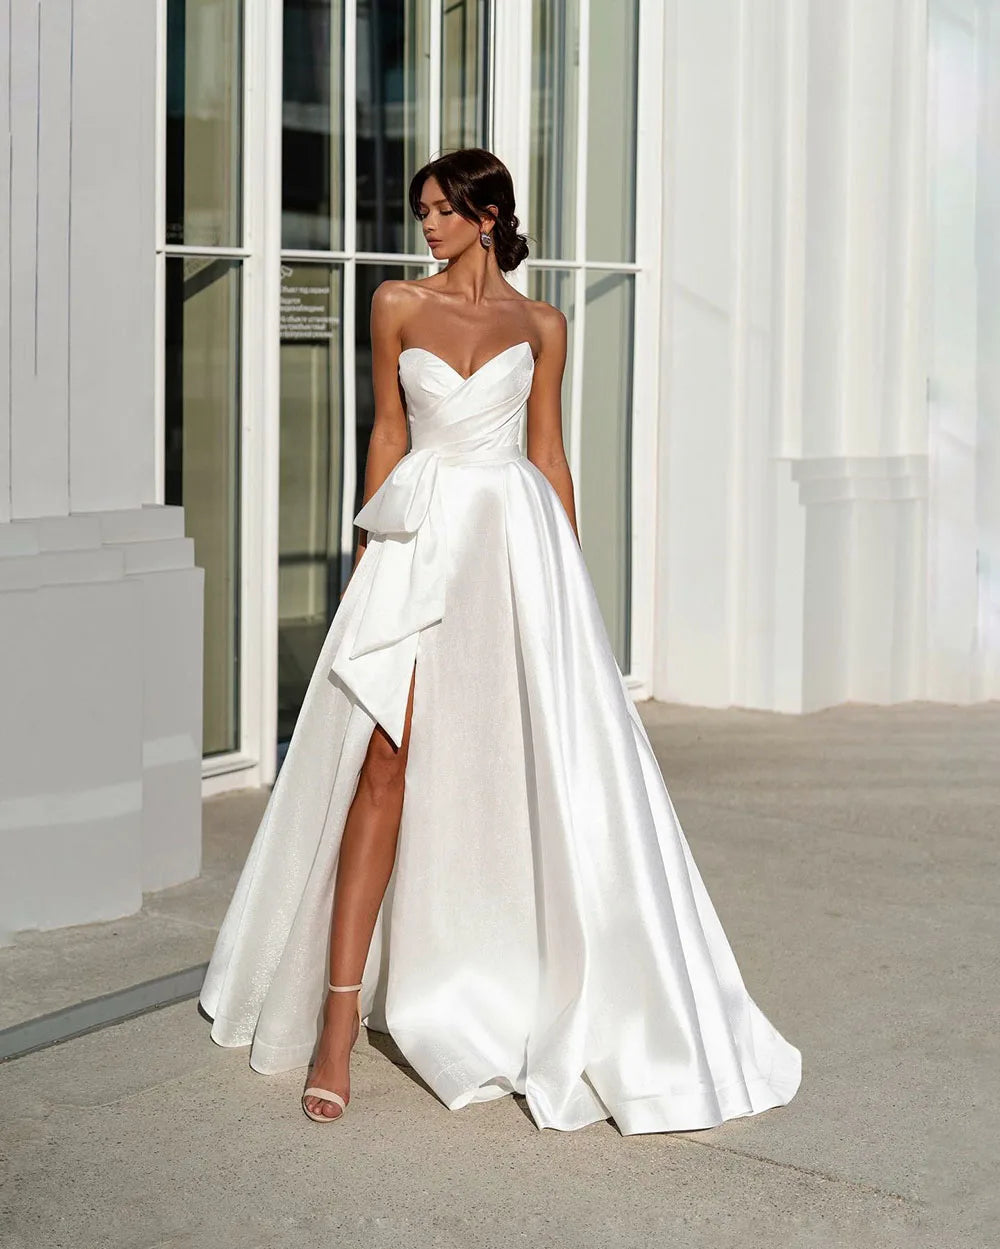 Nowoczesne eleganckie dzielone Seksowne suknie weselne ukochane plisaty suknie ślubne dla kobiet dostosowują do pomiaru szaty de marie